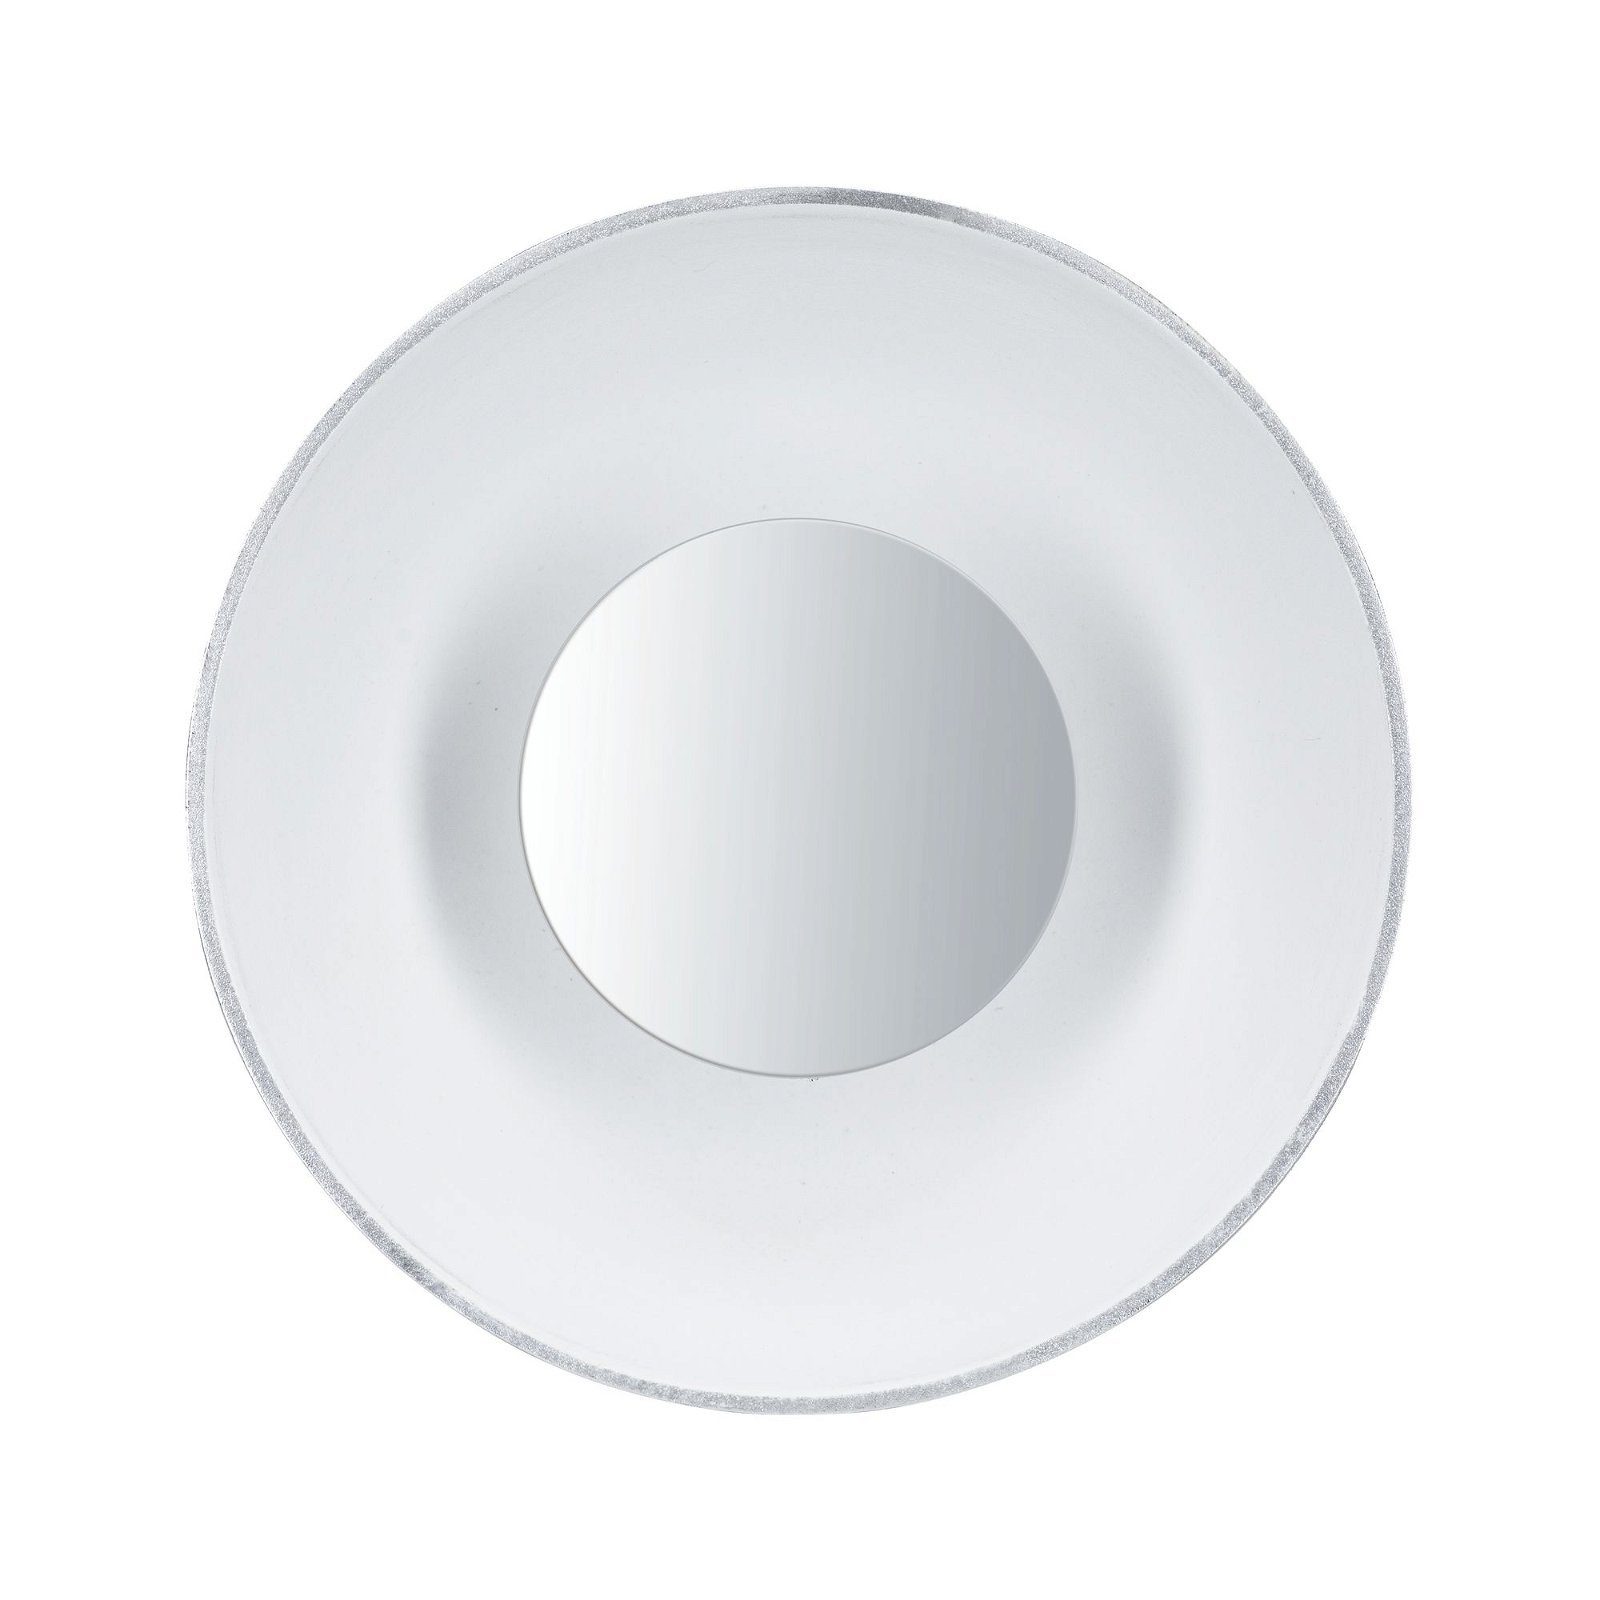 360lm LED-Leuchtmittel Paulmann 230V, weiß/silber 1 St., 4,9W Warmweiß